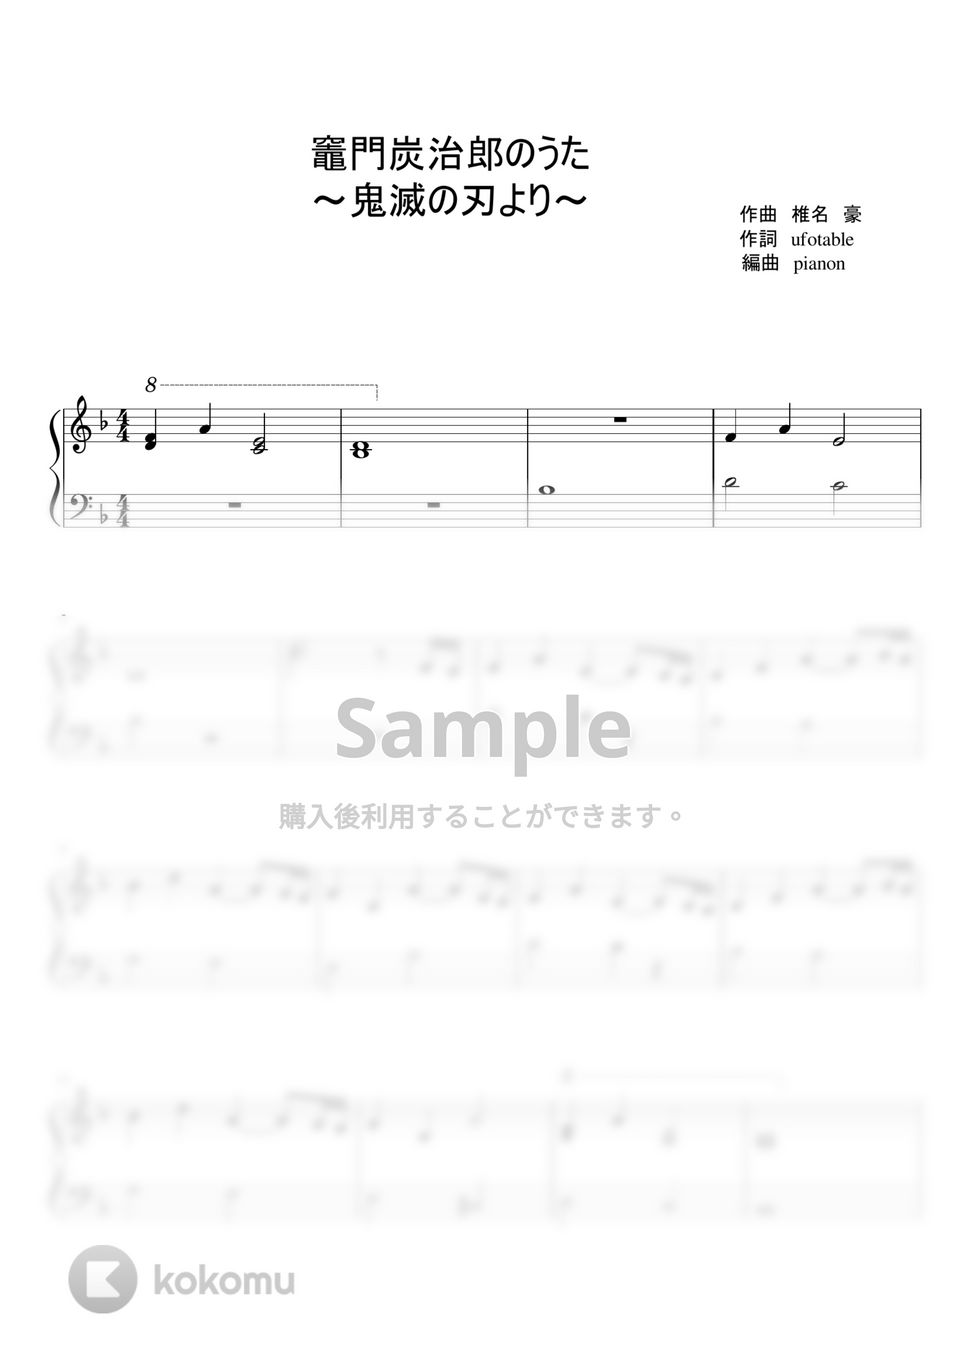 鬼滅の刃 - 竈門炭治郎のうた by pianon楽譜